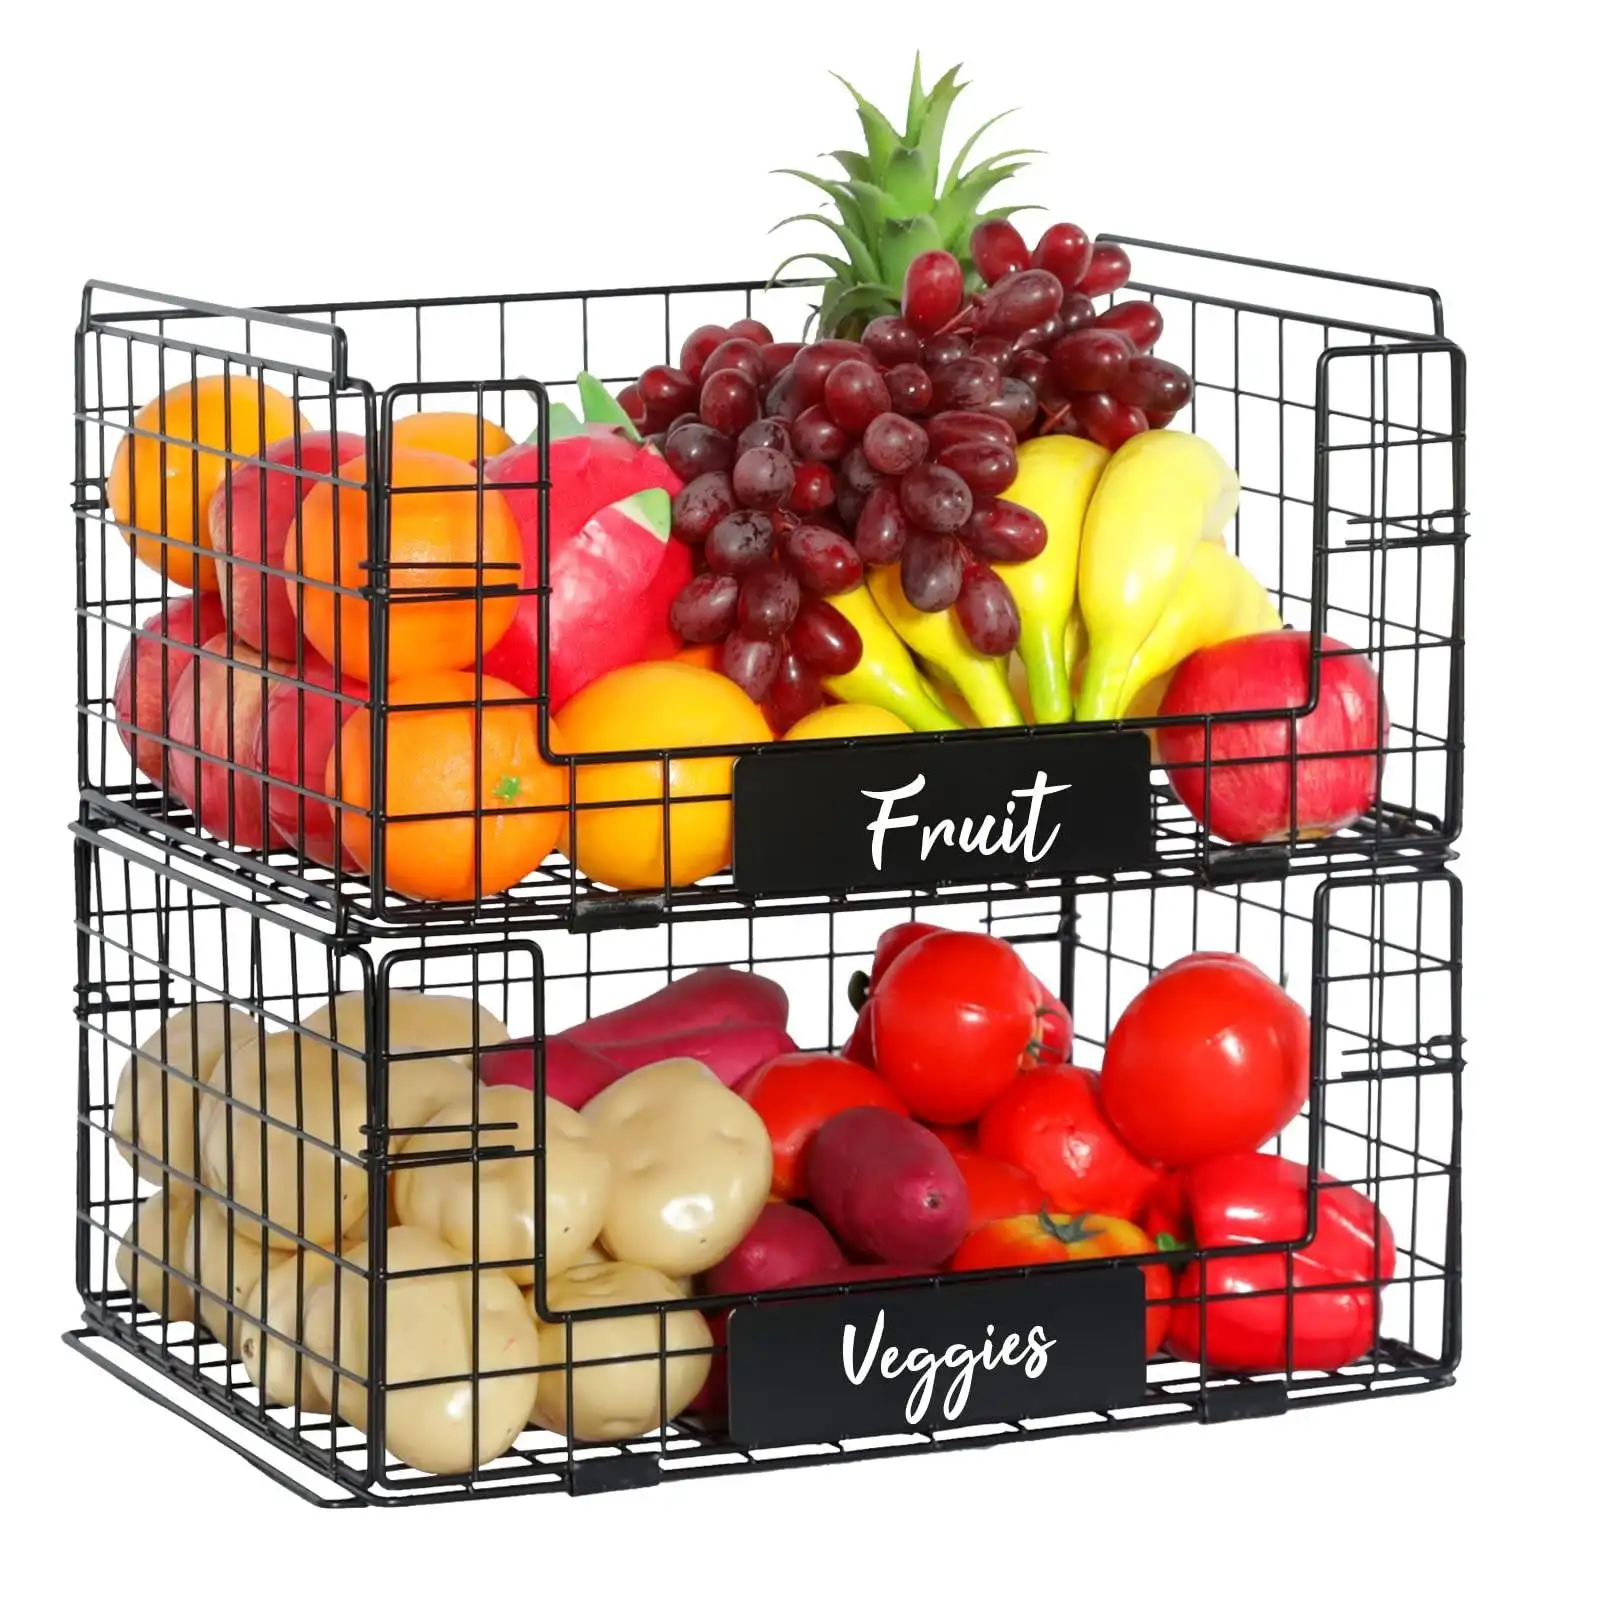 2 पैक स्टैकबल के साथ फलों और सब्जियों की टोकरी के साथ भंडारण के लिए नाम प्लेट धातु भंडारण बिन फल सकते हैं